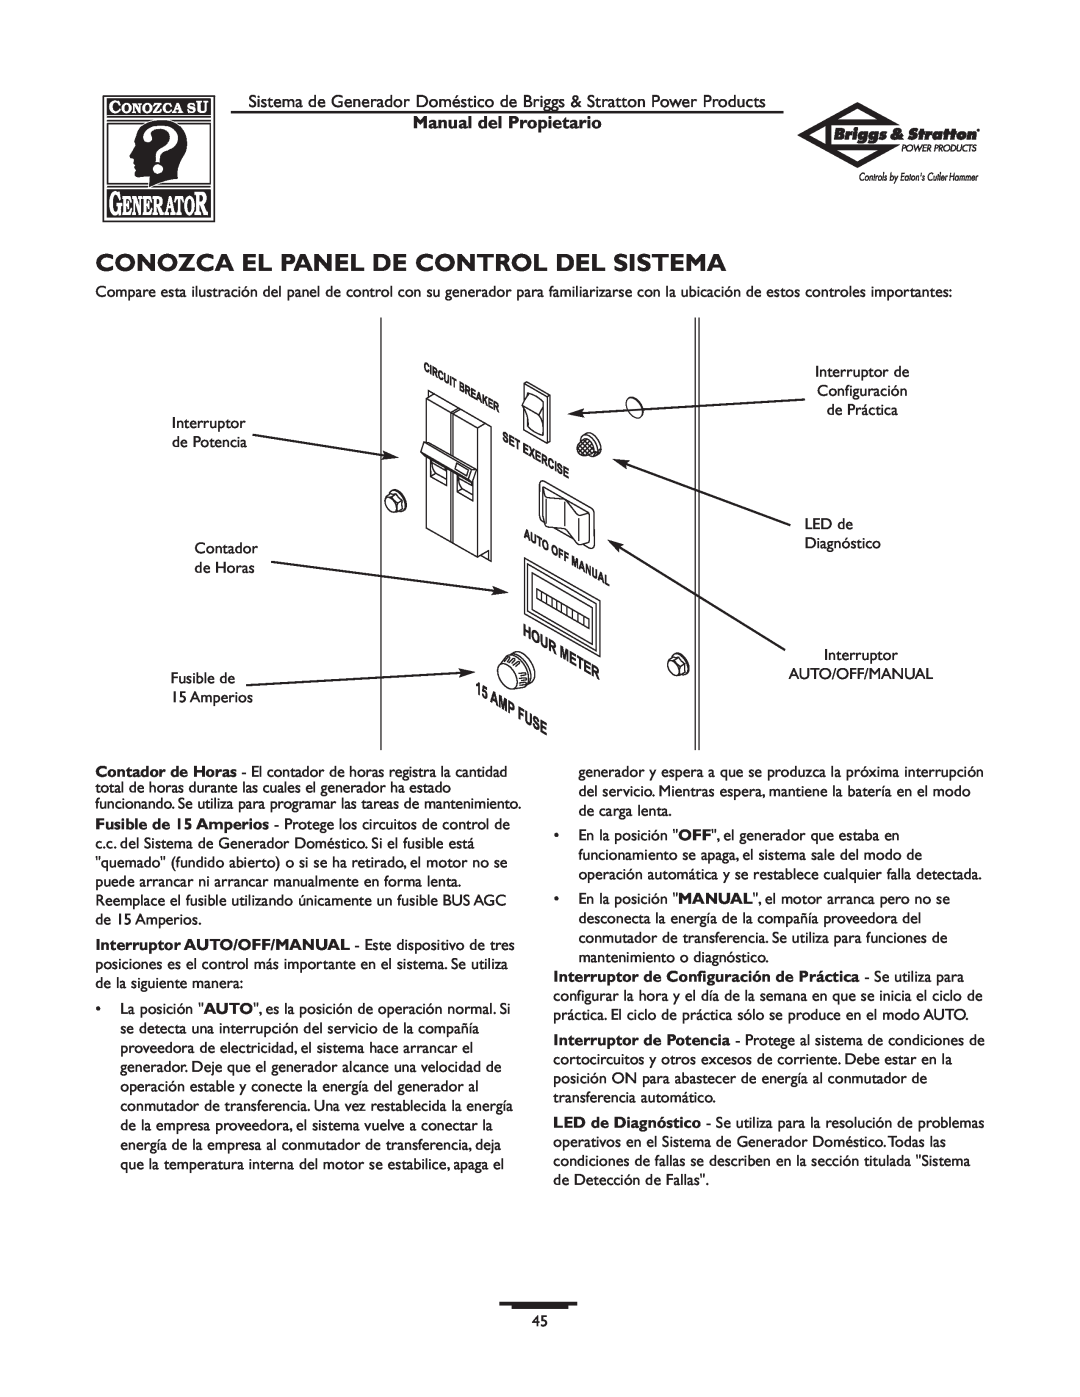 Briggs & Stratton 1679-0 owner manual Conozca El Panel De Control Del Sistema, Manual del Propietario 